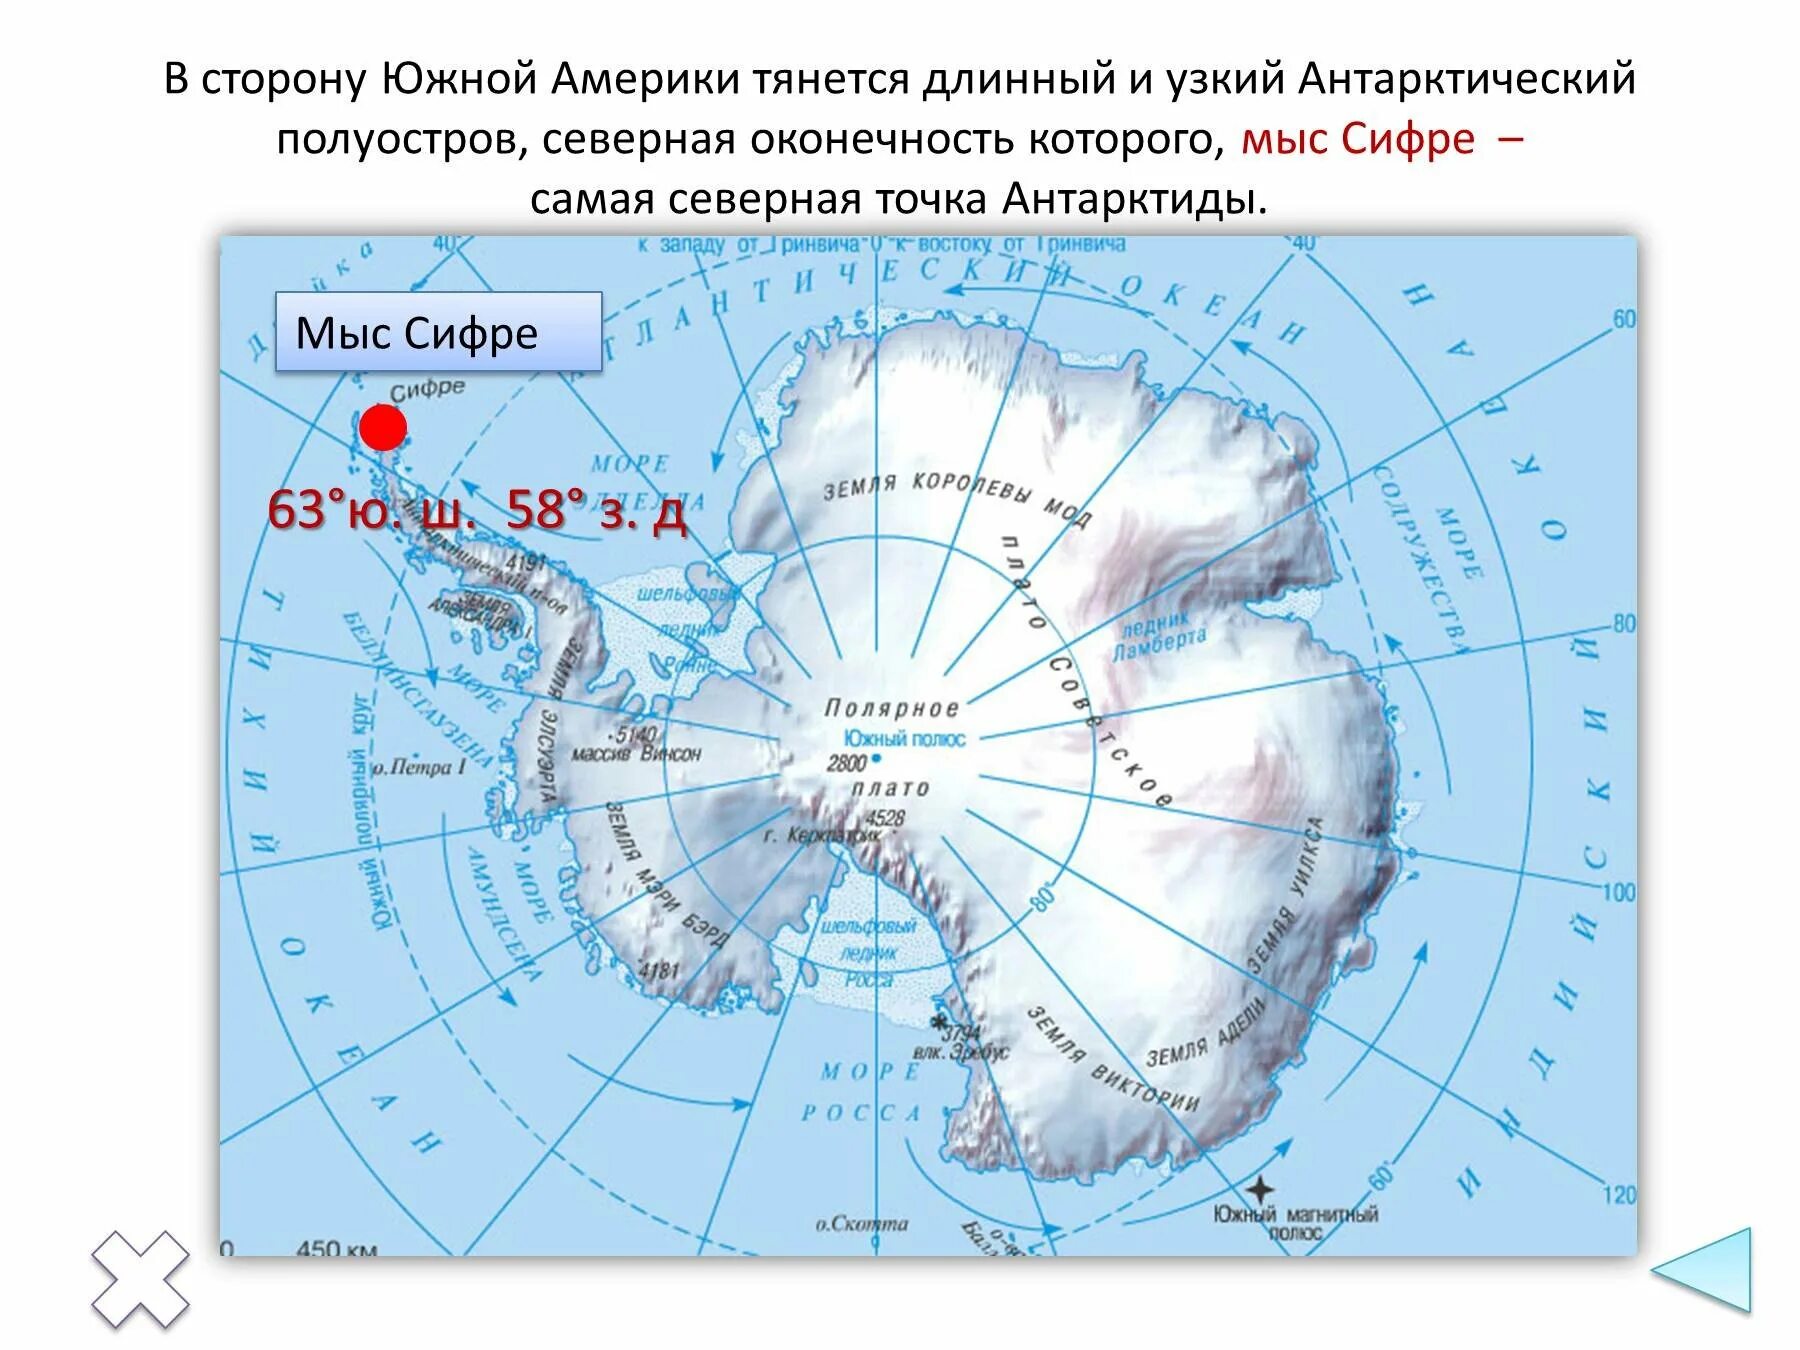 Мыс Сифре на карте Антарктиды. Крайние точки материка Антарктида. Крайняя точка мыс Сифре на карте Антарктиды. Крайние точки Антарктиды на карте.